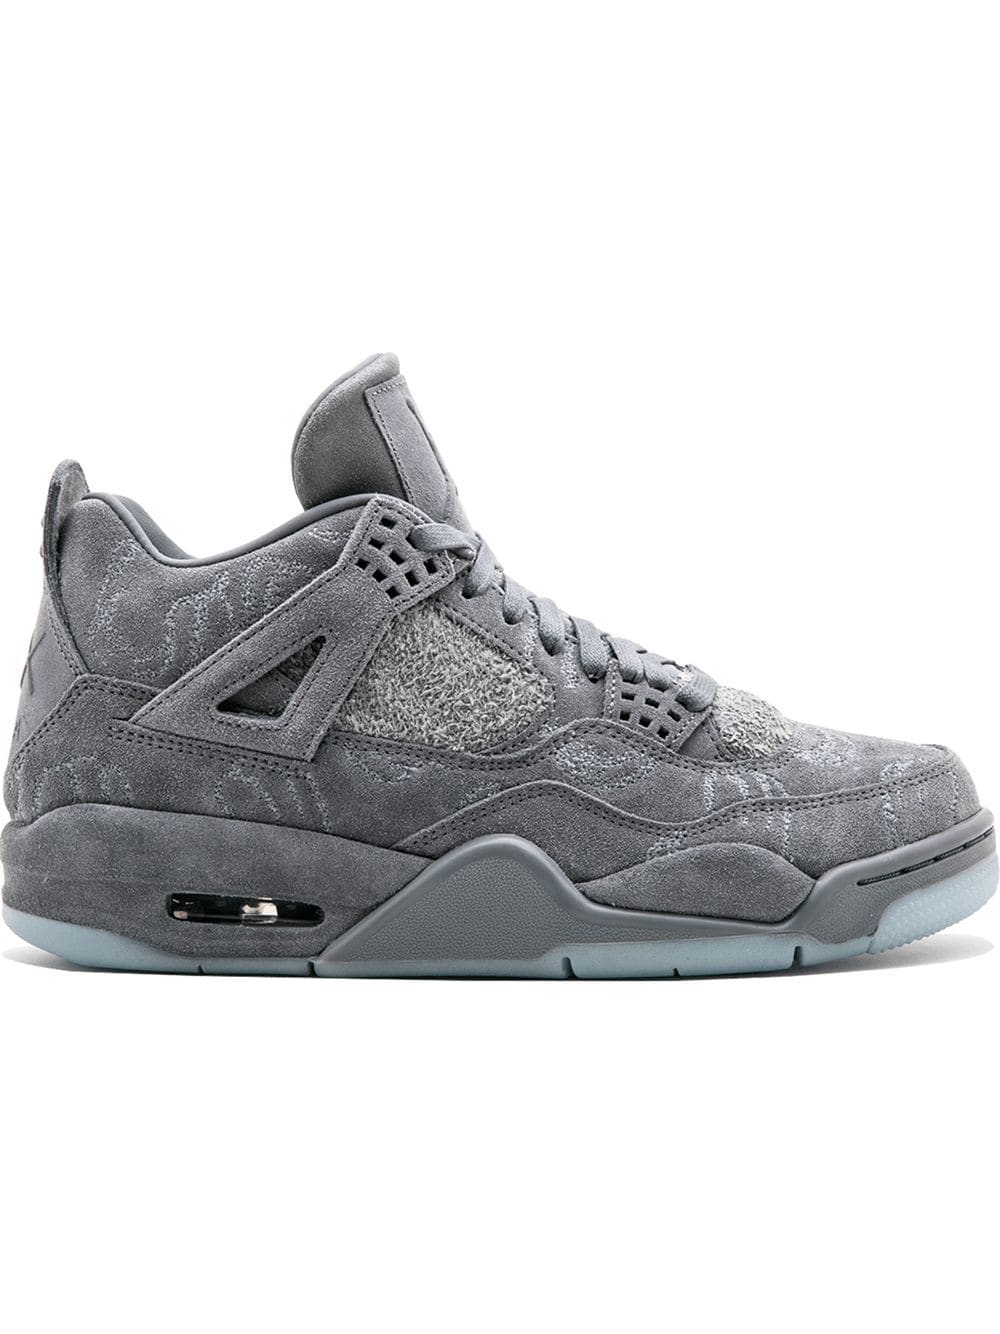 Jordan x Kaws Air Jordan 4 Retro sneakers - Grey